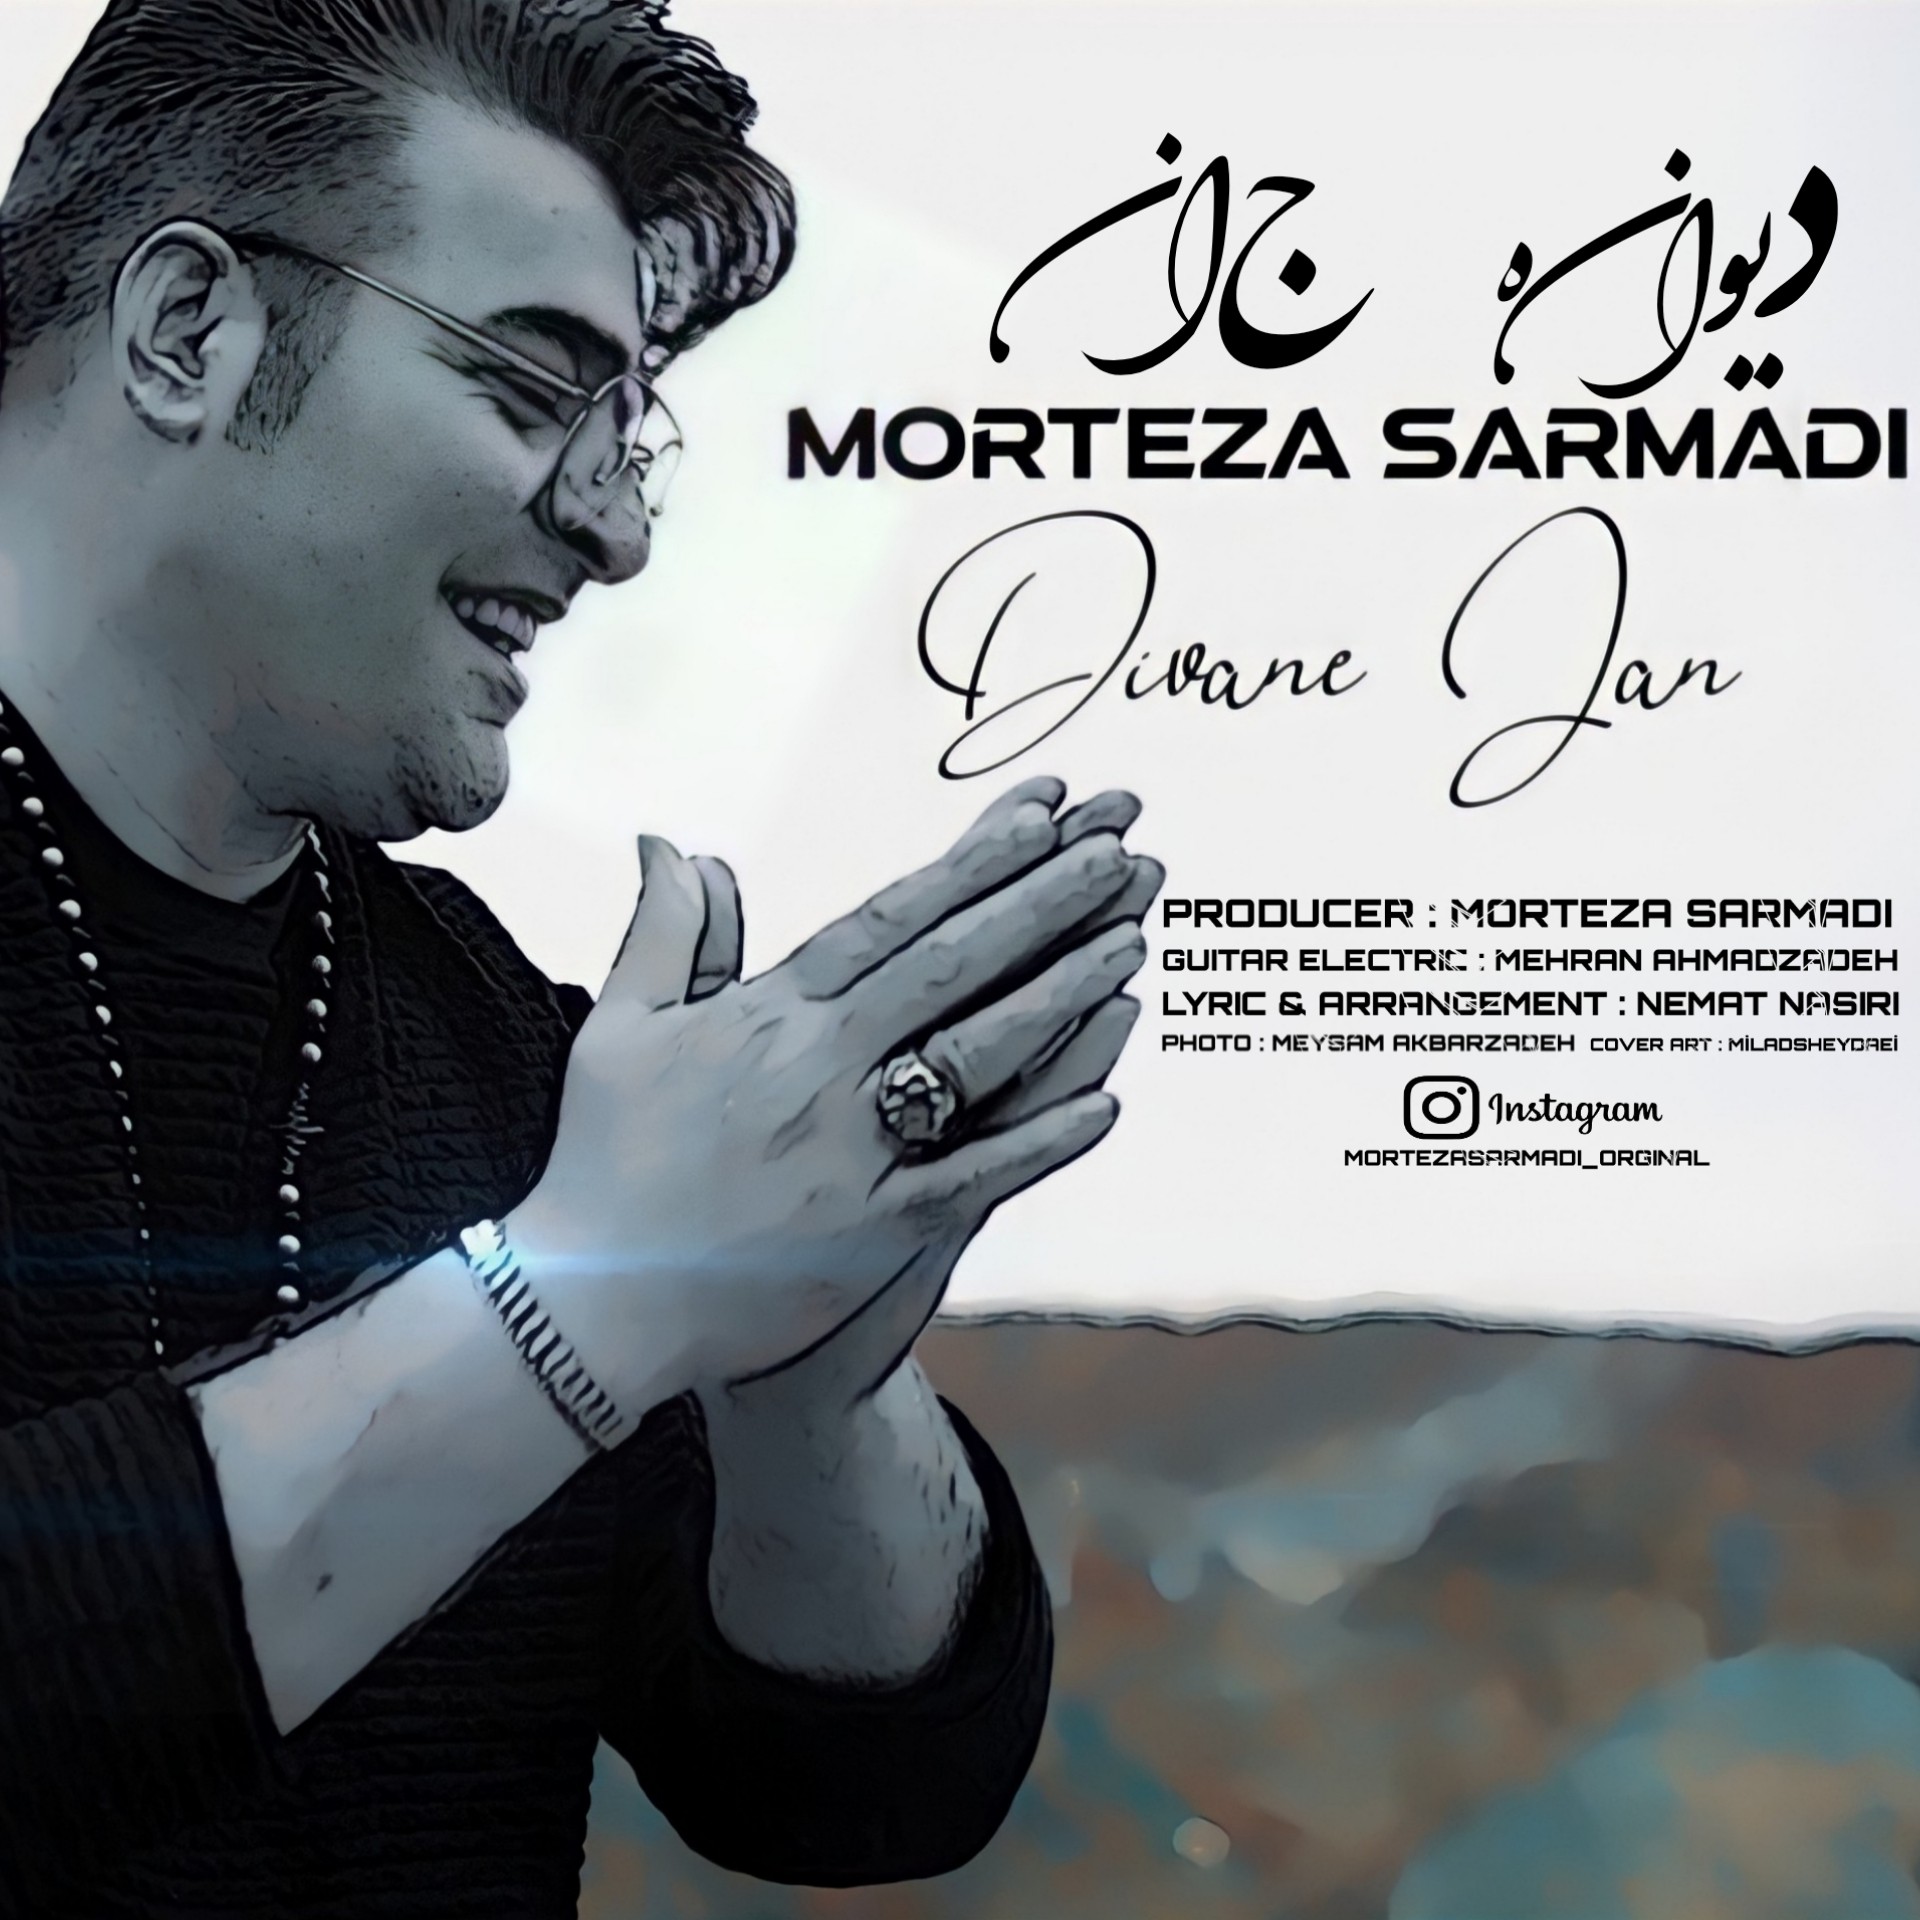  دانلود آهنگ جدید مرتضی سرمدی - دیوانه جان | Download New Music By Divane Jan - Morteza Sarmadi